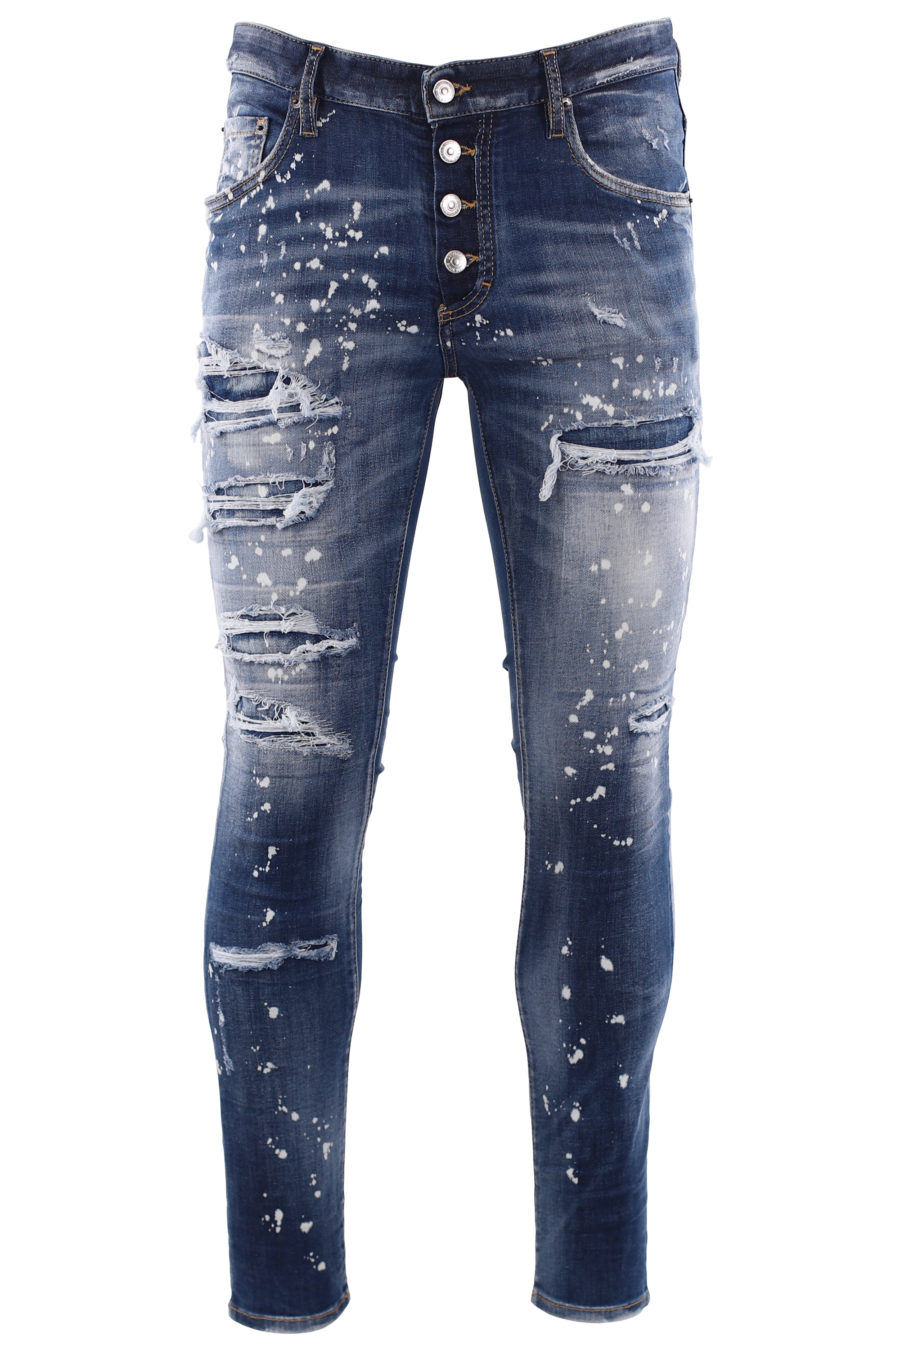 Tejano "super twinky jean" azul desgastado y pintura blanca - IMG 6682